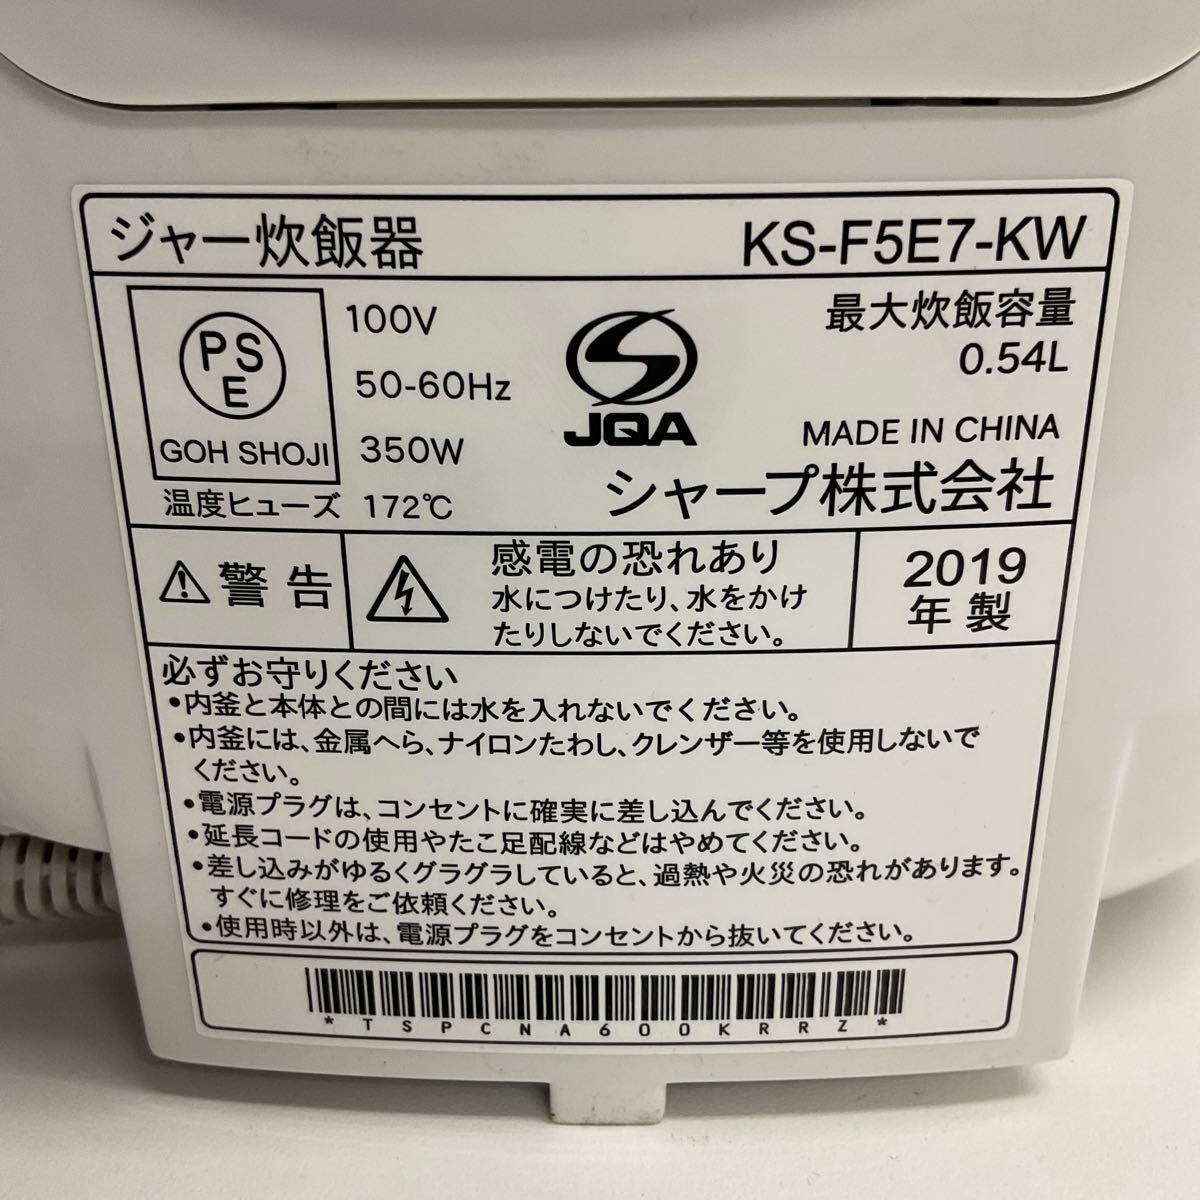 .MK16-80Y SHARP sharp рисоварка KS-F5E7-KW 2019 год производства 3... для бытового использования рисоварка бытовая техника электризация проверка settled 